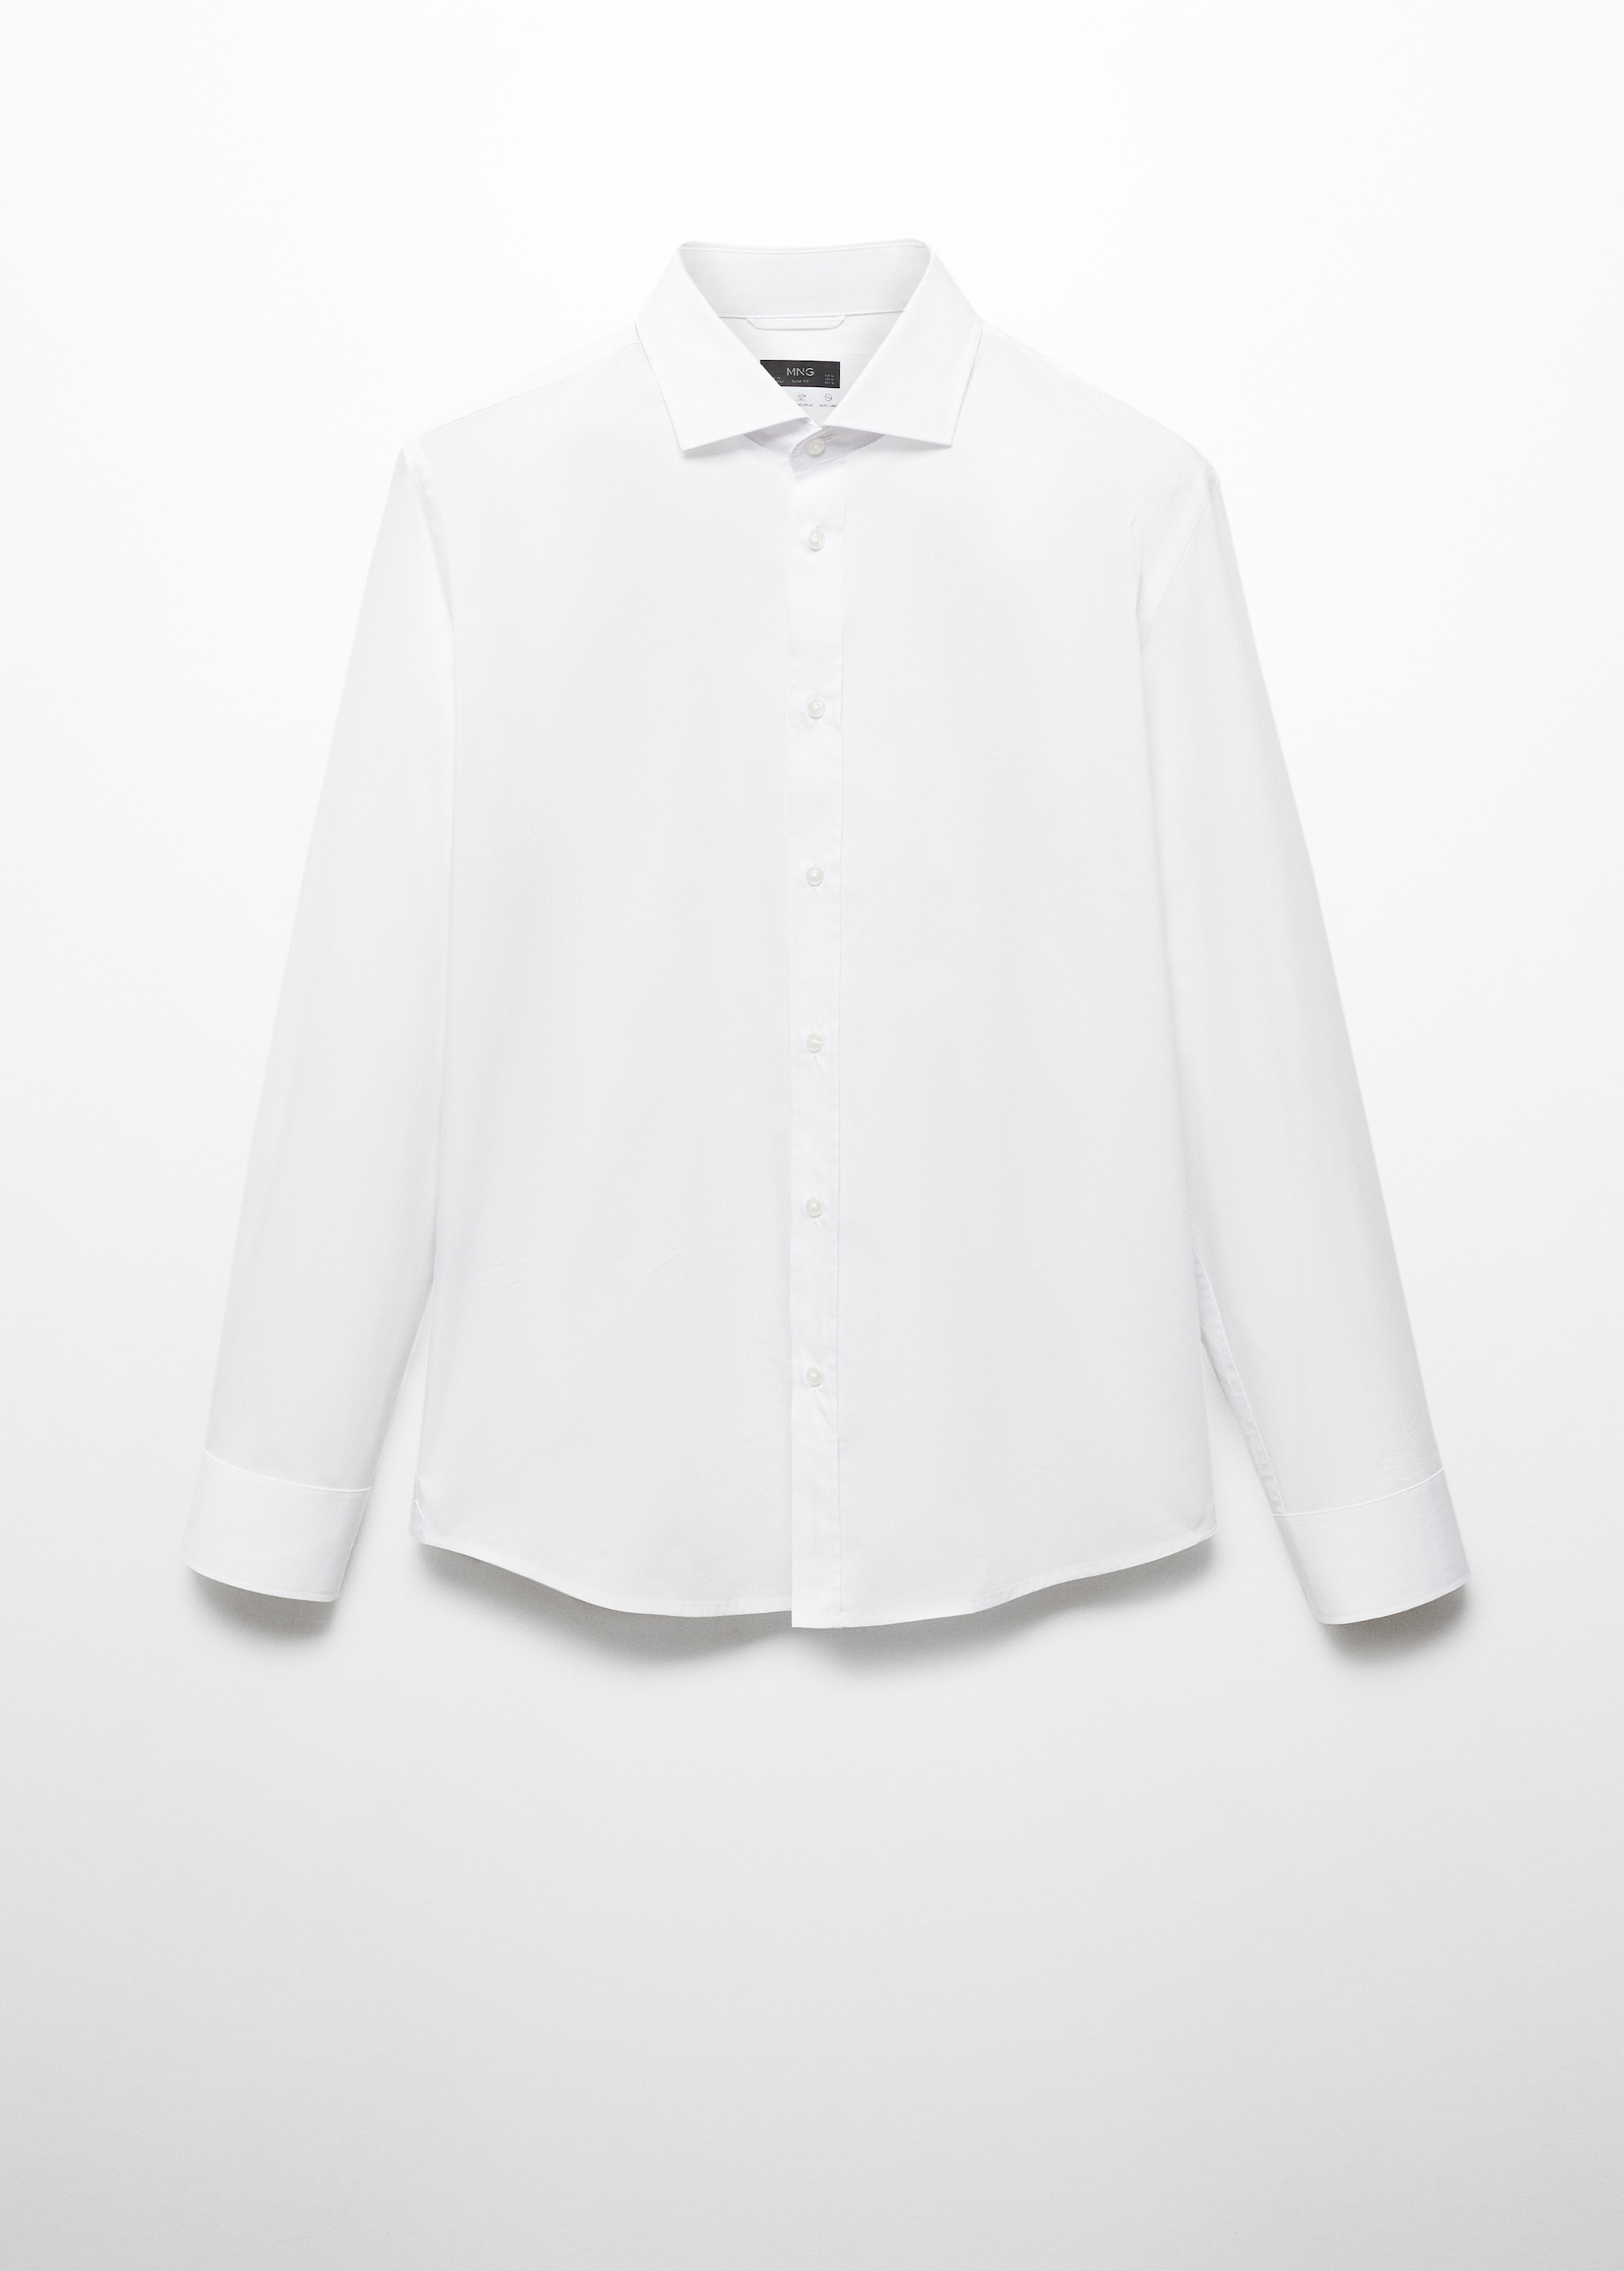 Camisa algodón Coolmax® - Artículo sin modelo